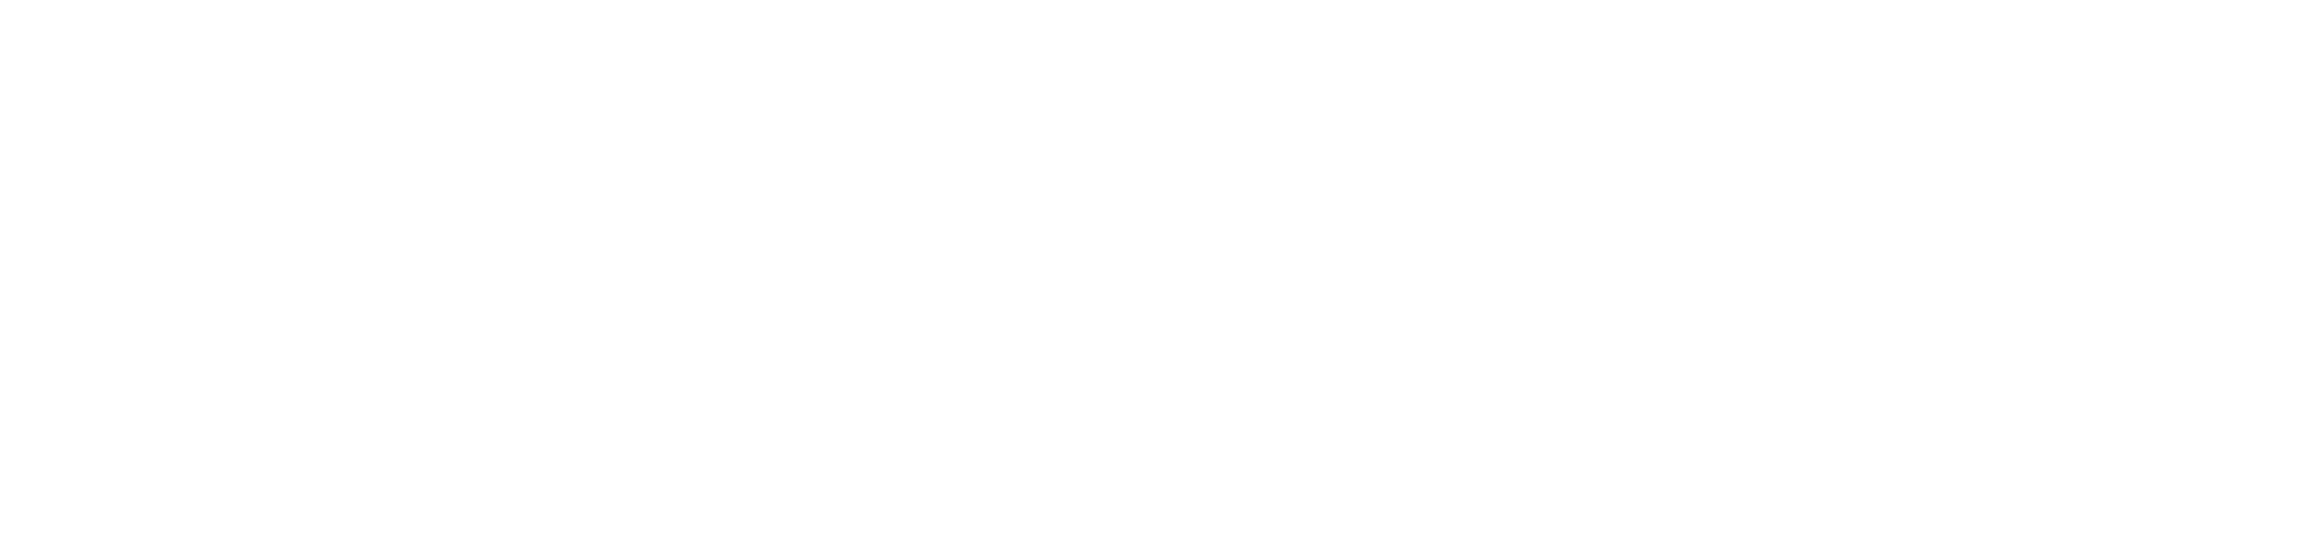 HexCorp